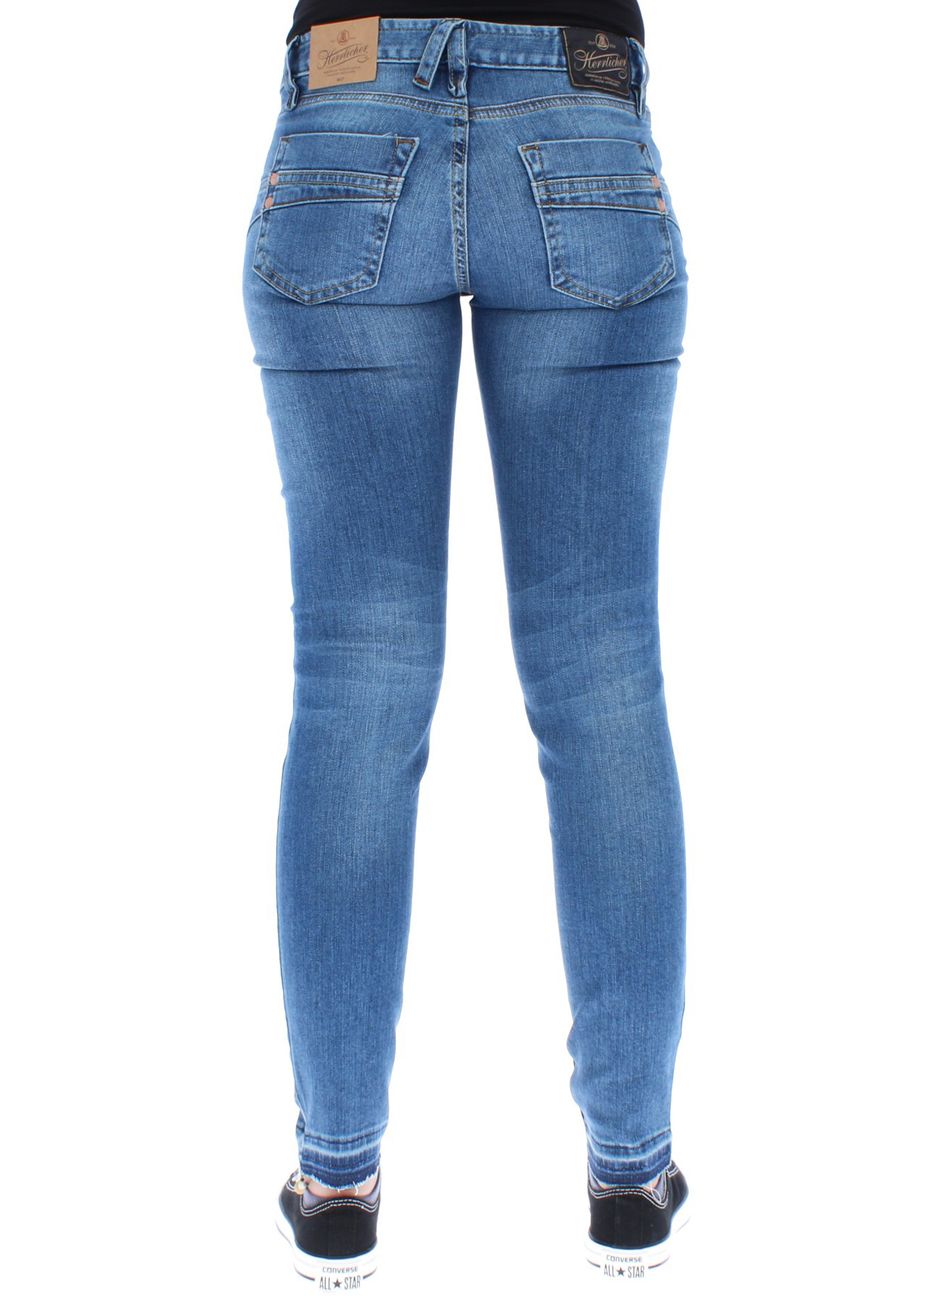 Herrlicher Damen Jeans Touch Cropped 076 Blend - Herrlicher - SAGATOO - 4053192488916